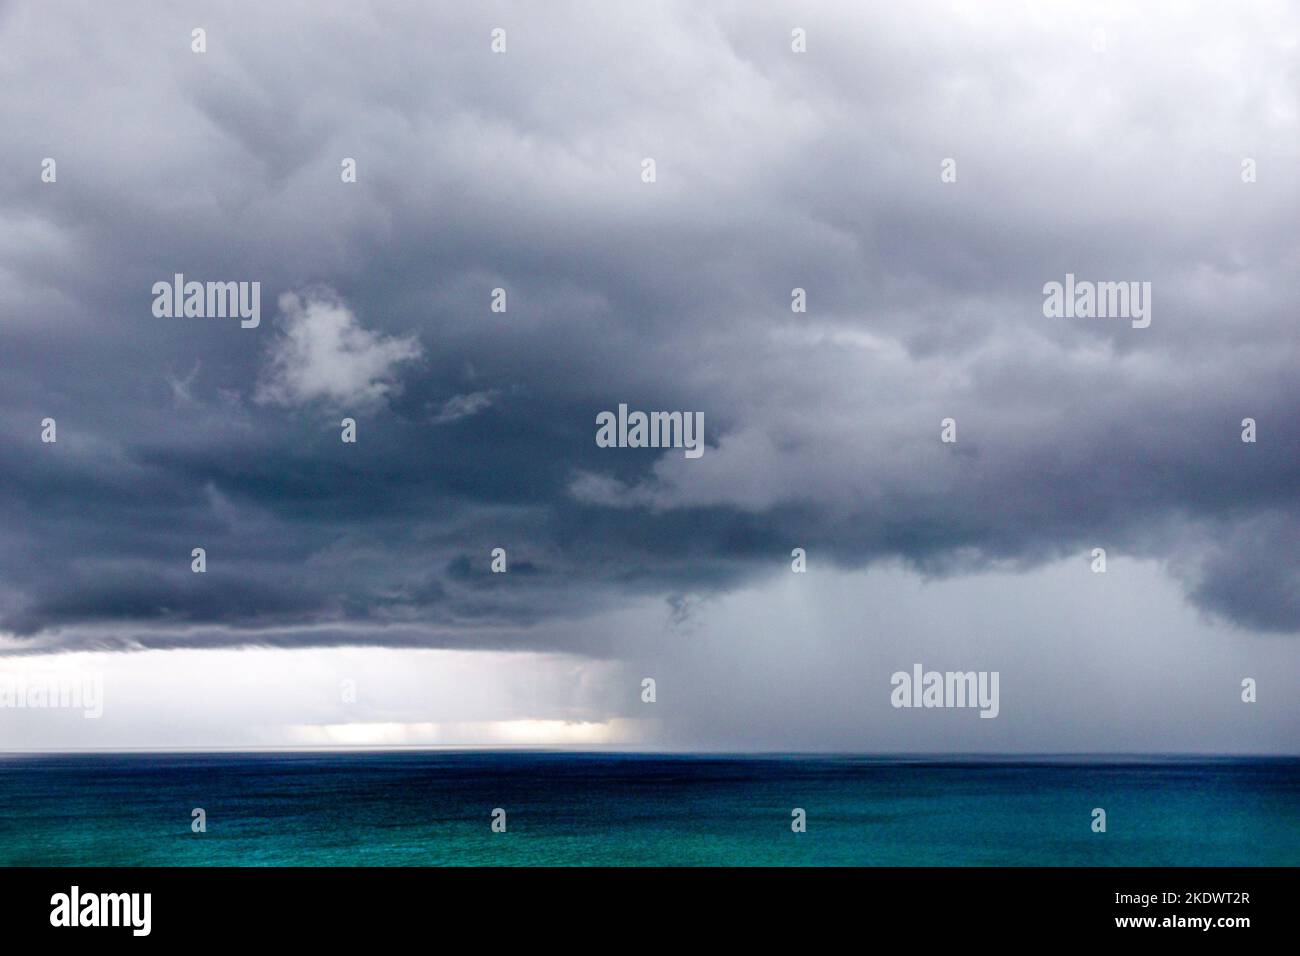 Miami Beach Floride, océan Atlantique eau temps tempête nuages gris foncé gris pluie lourde descente, changement climatique réchauffement climatique, Banque D'Images